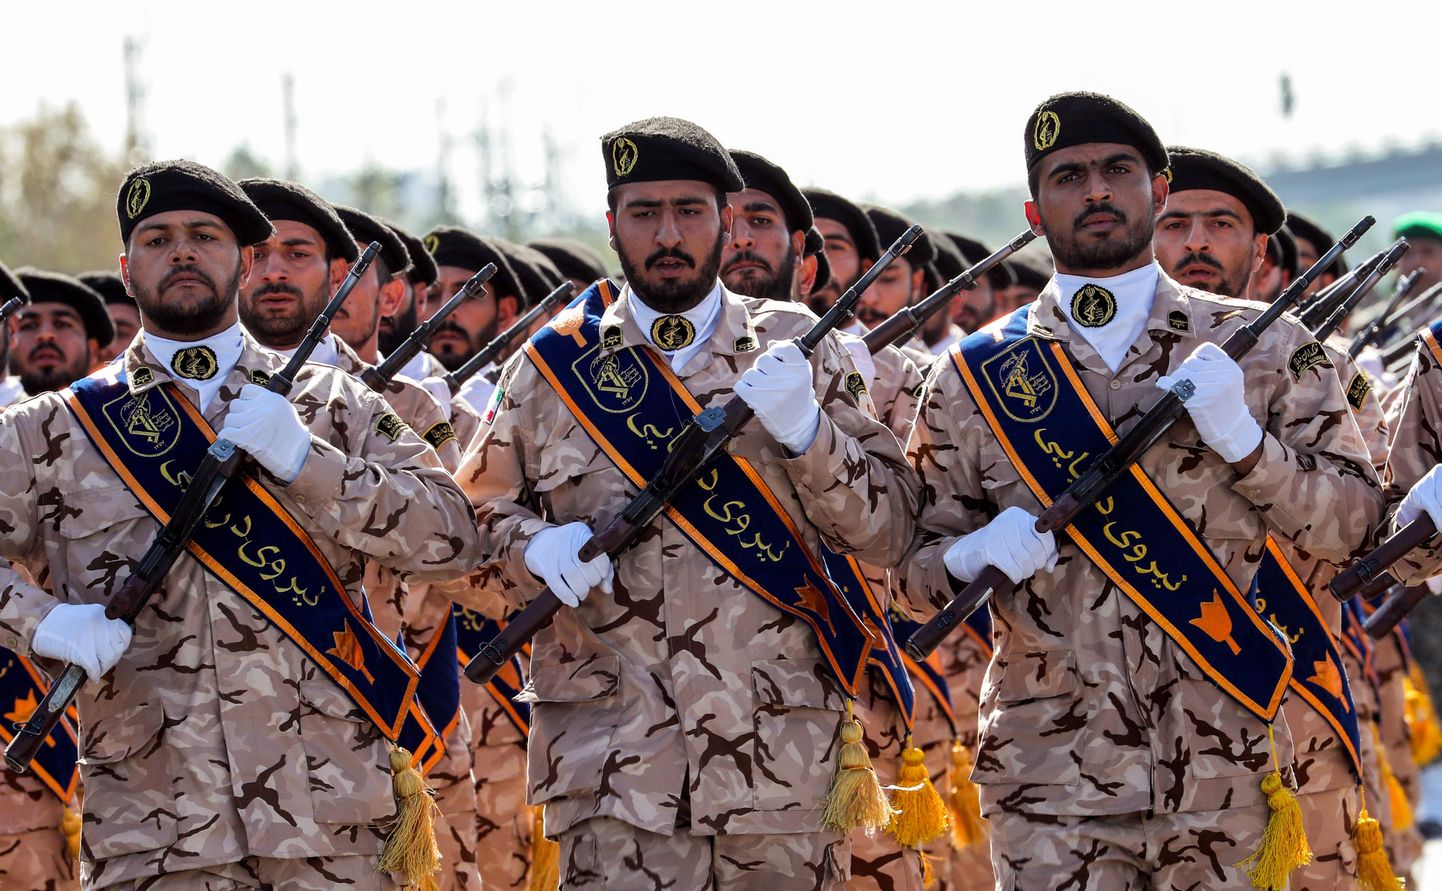 Iraani revolutsioonikaardi sõdurid paraadil.